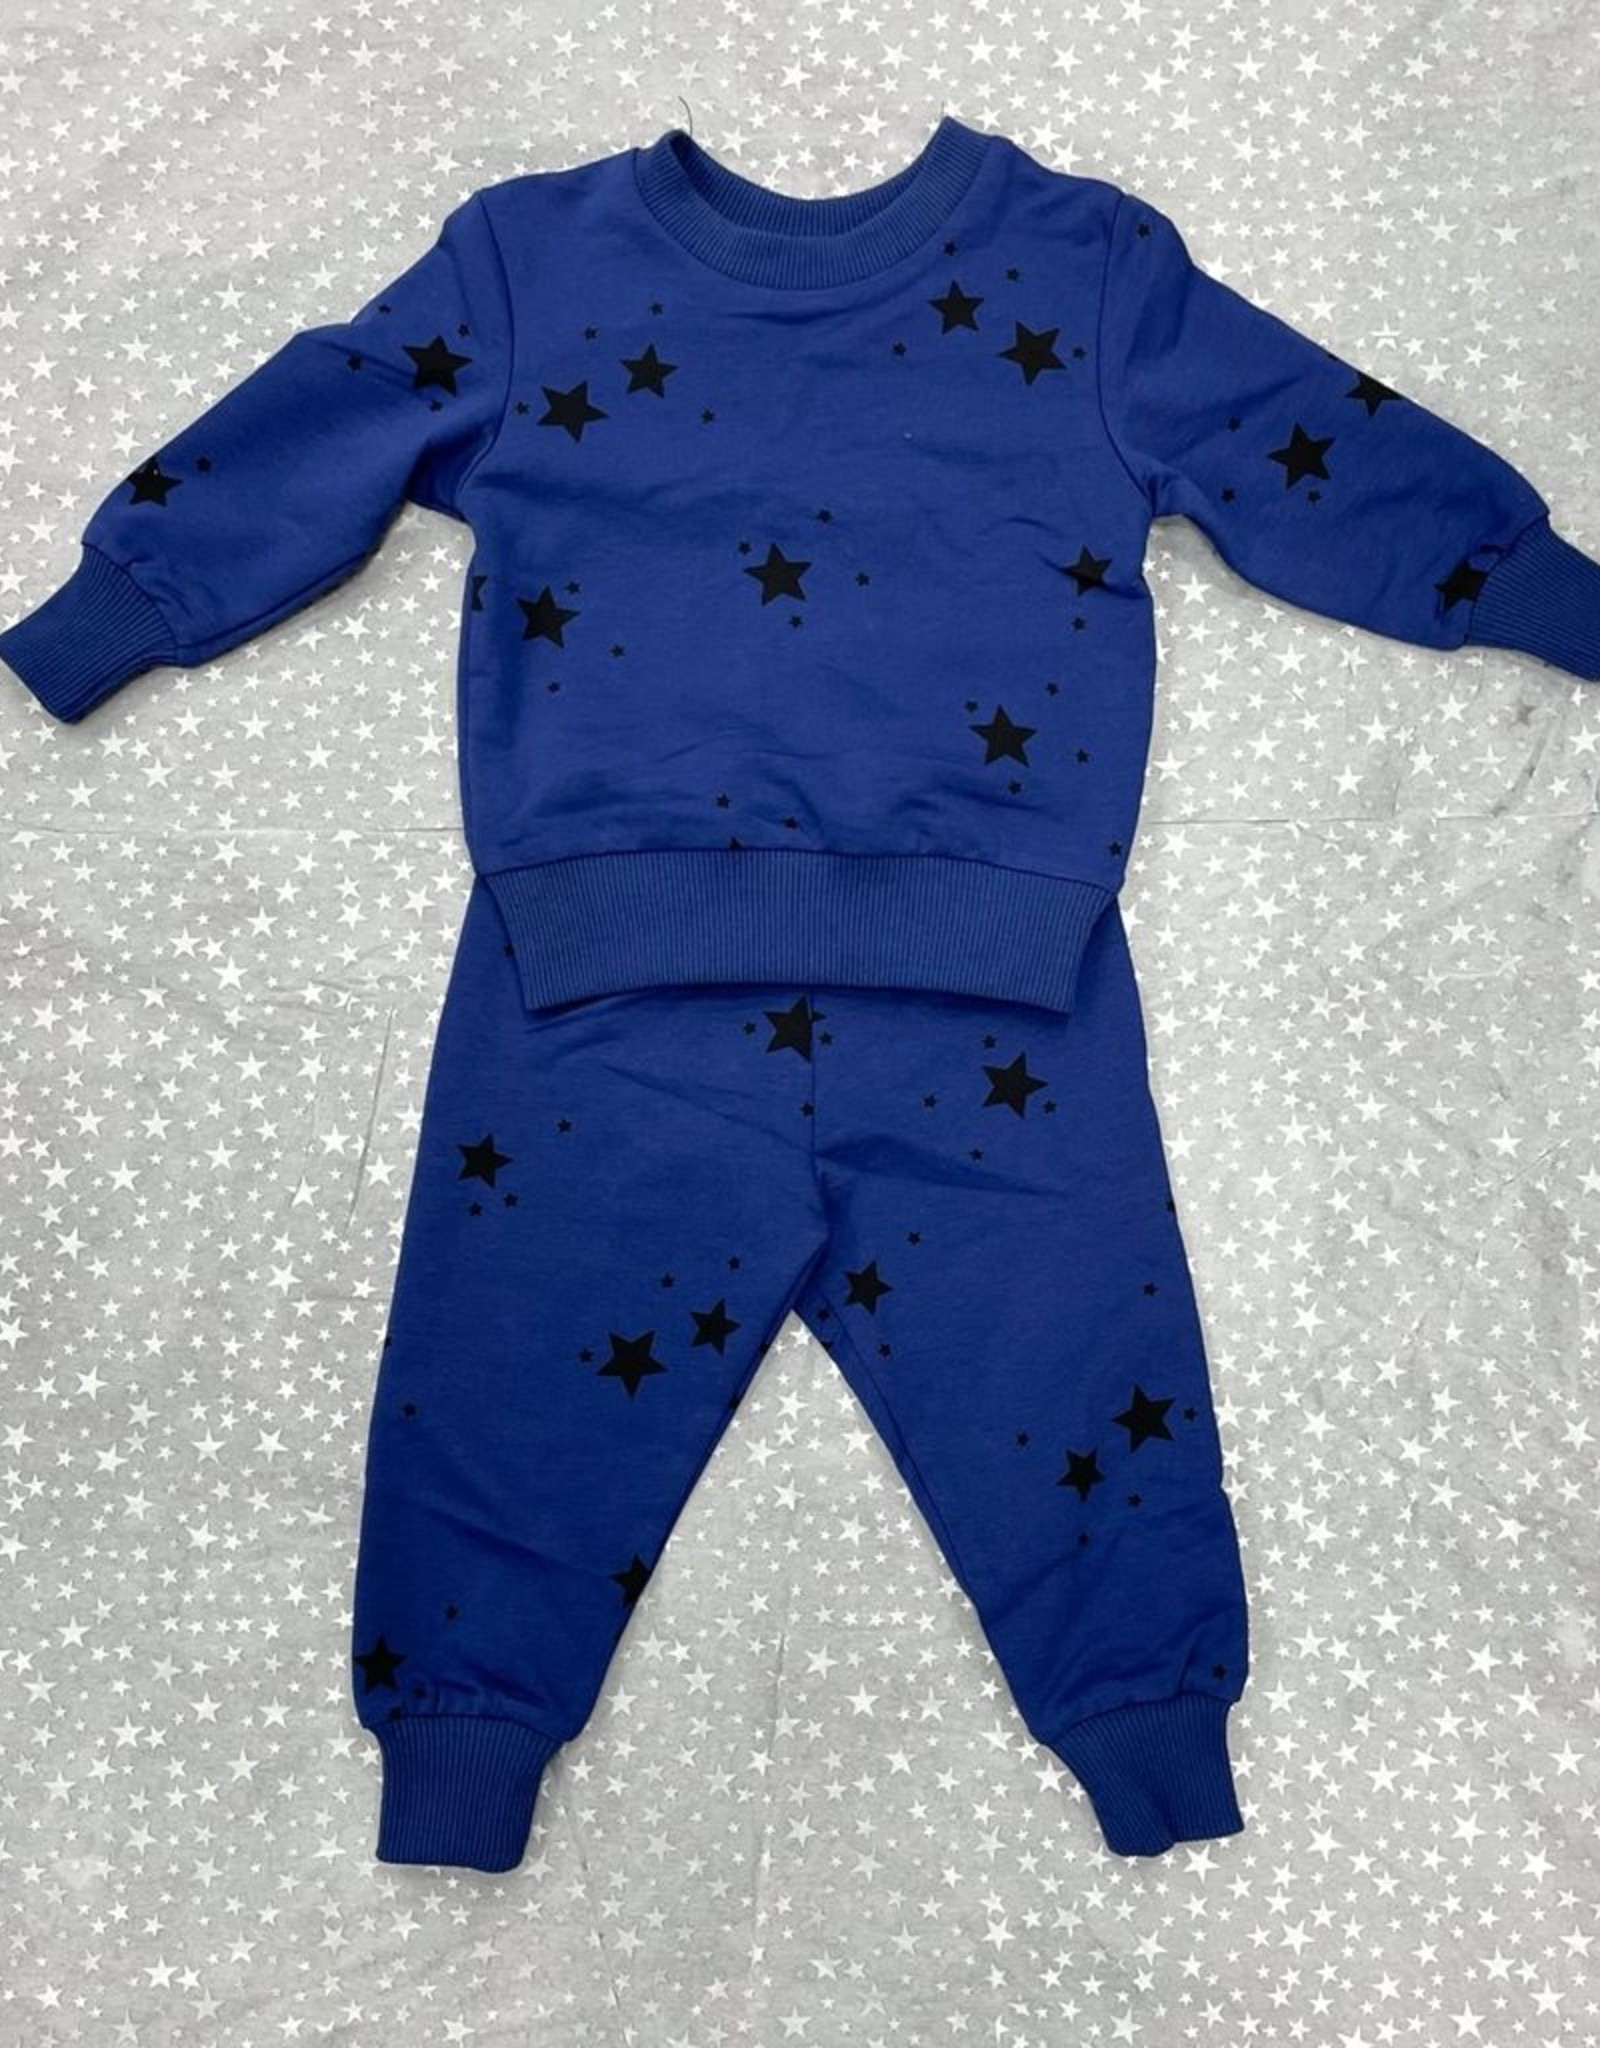 Siccinino Siccinino Sweatsuit with Stars Pajama